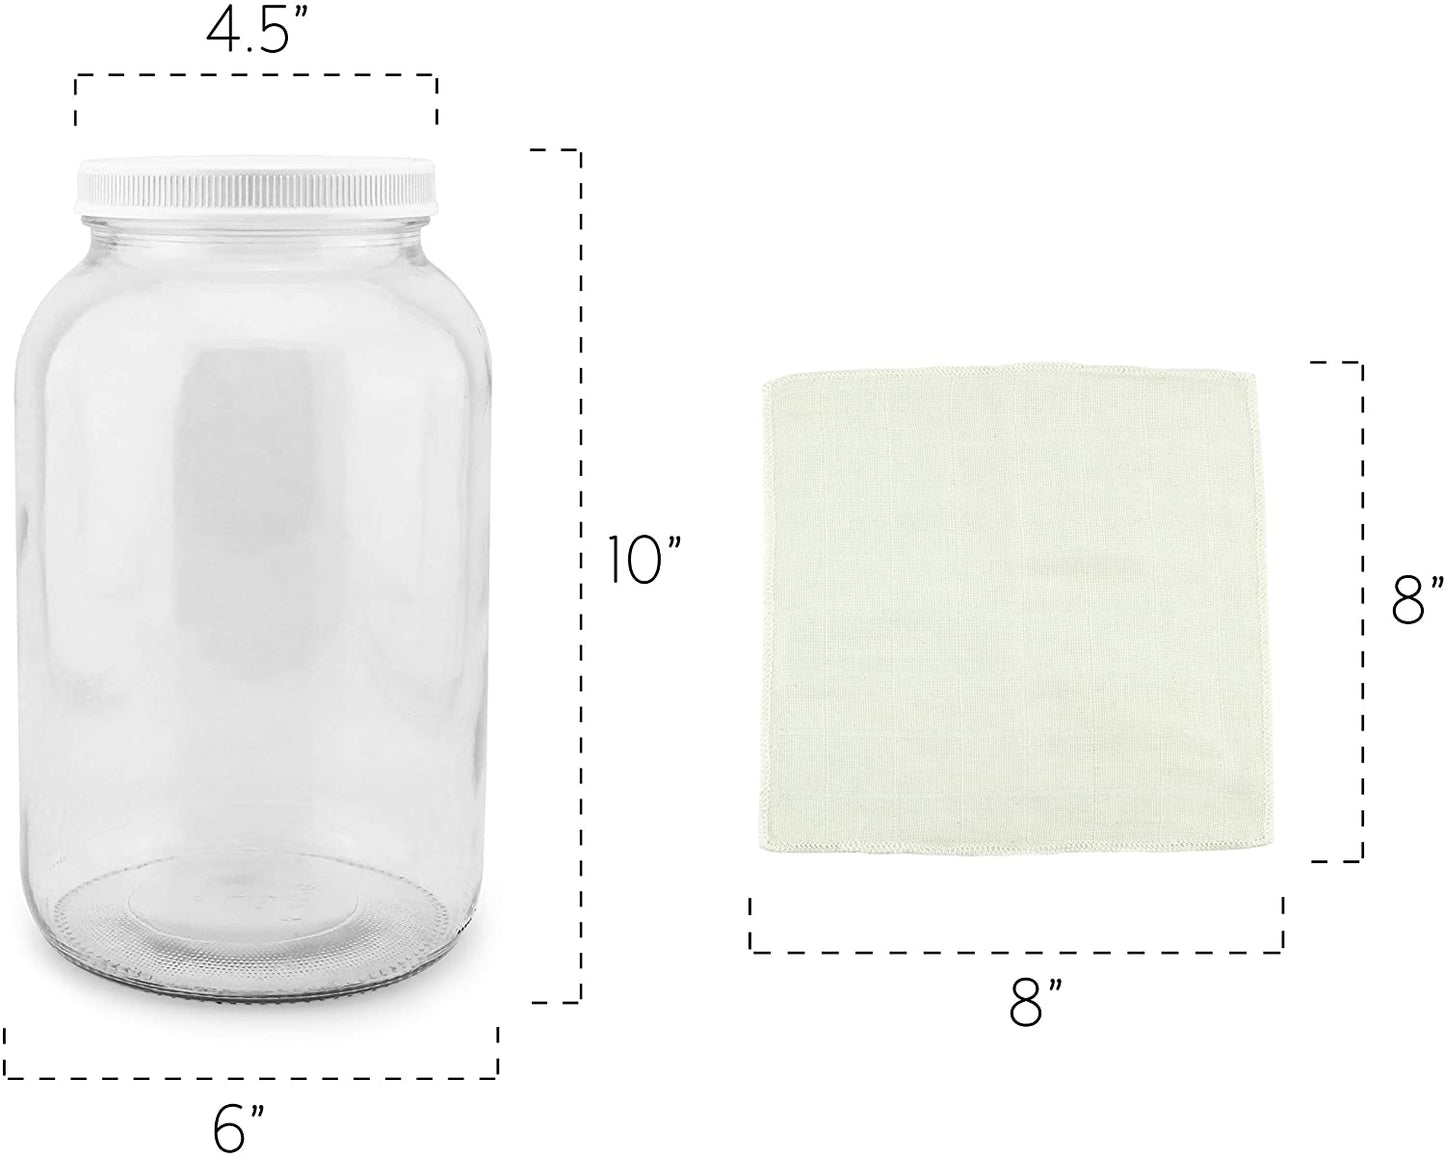 1 Gallon Glass Kombucha Jar